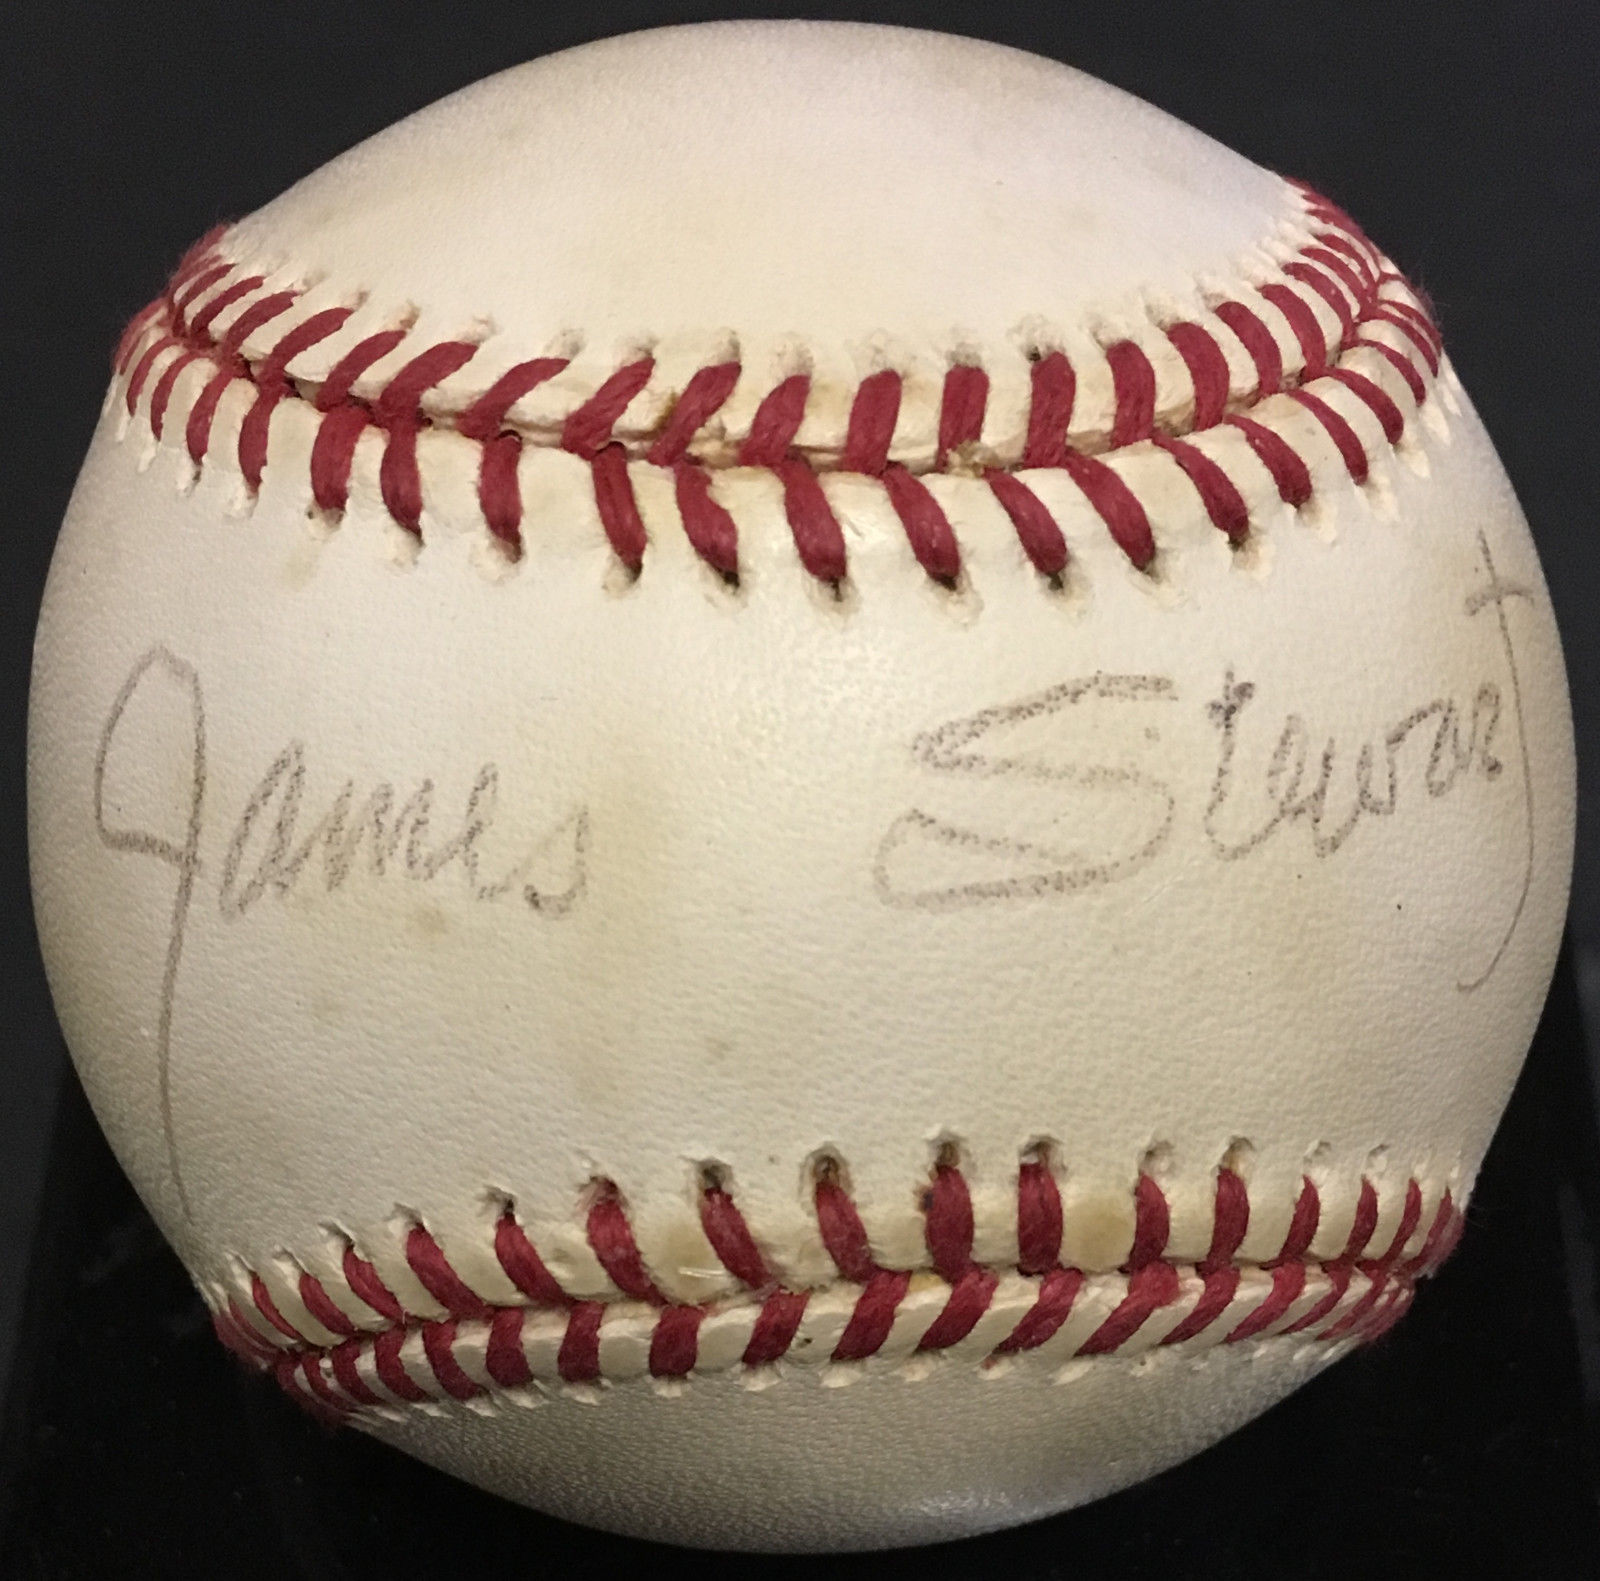 James Stewart Vertigo actor signed official AL Baseball autograph PSA/DNA COA